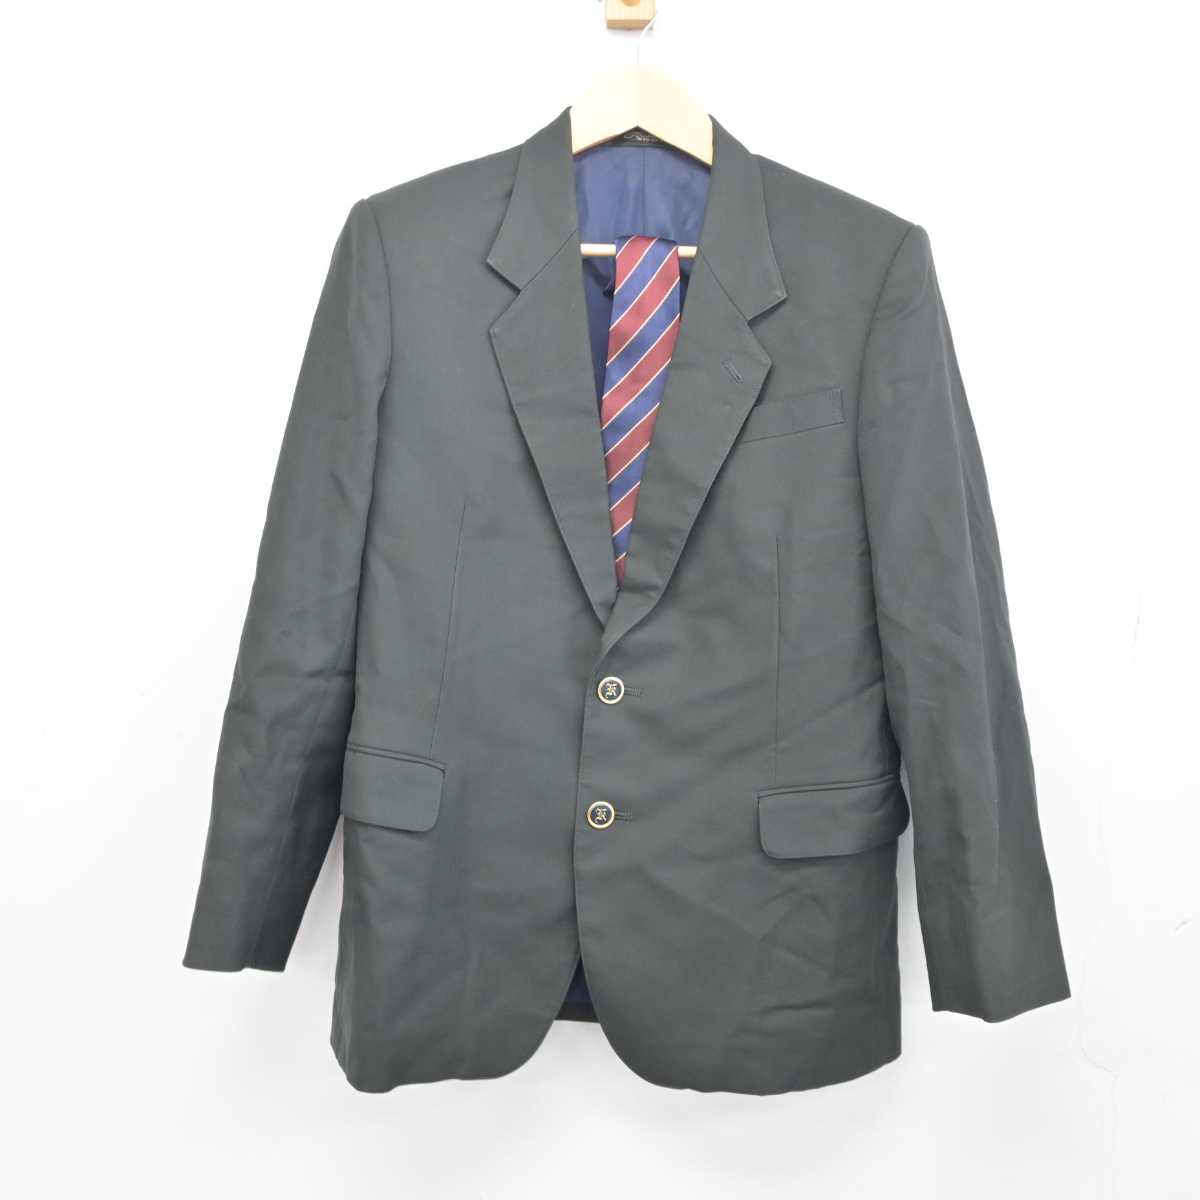 宮崎第一中学校 男子制服一式(ブレザーは売れました) - 宮崎県の服 